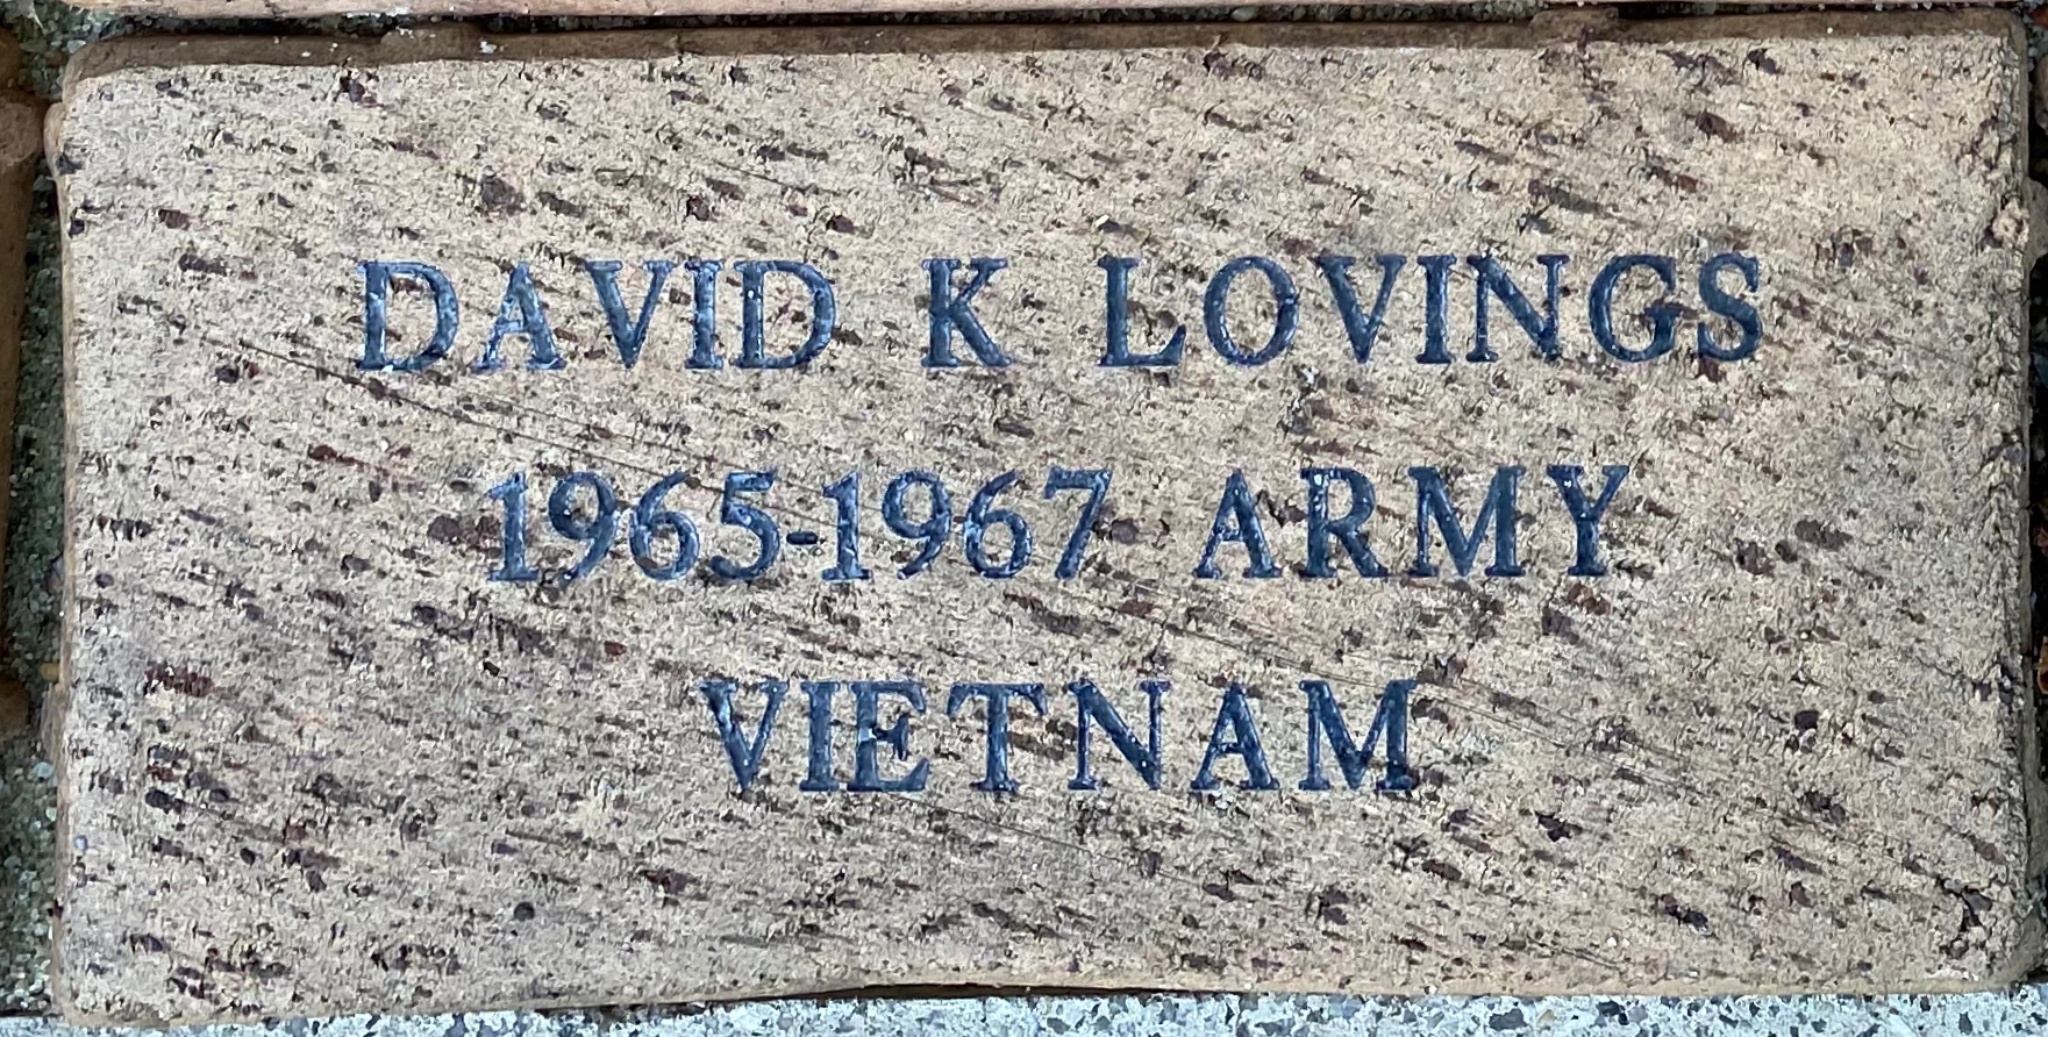 DAVID K LOVINGS 1965-1967 ARMY VIETNAM